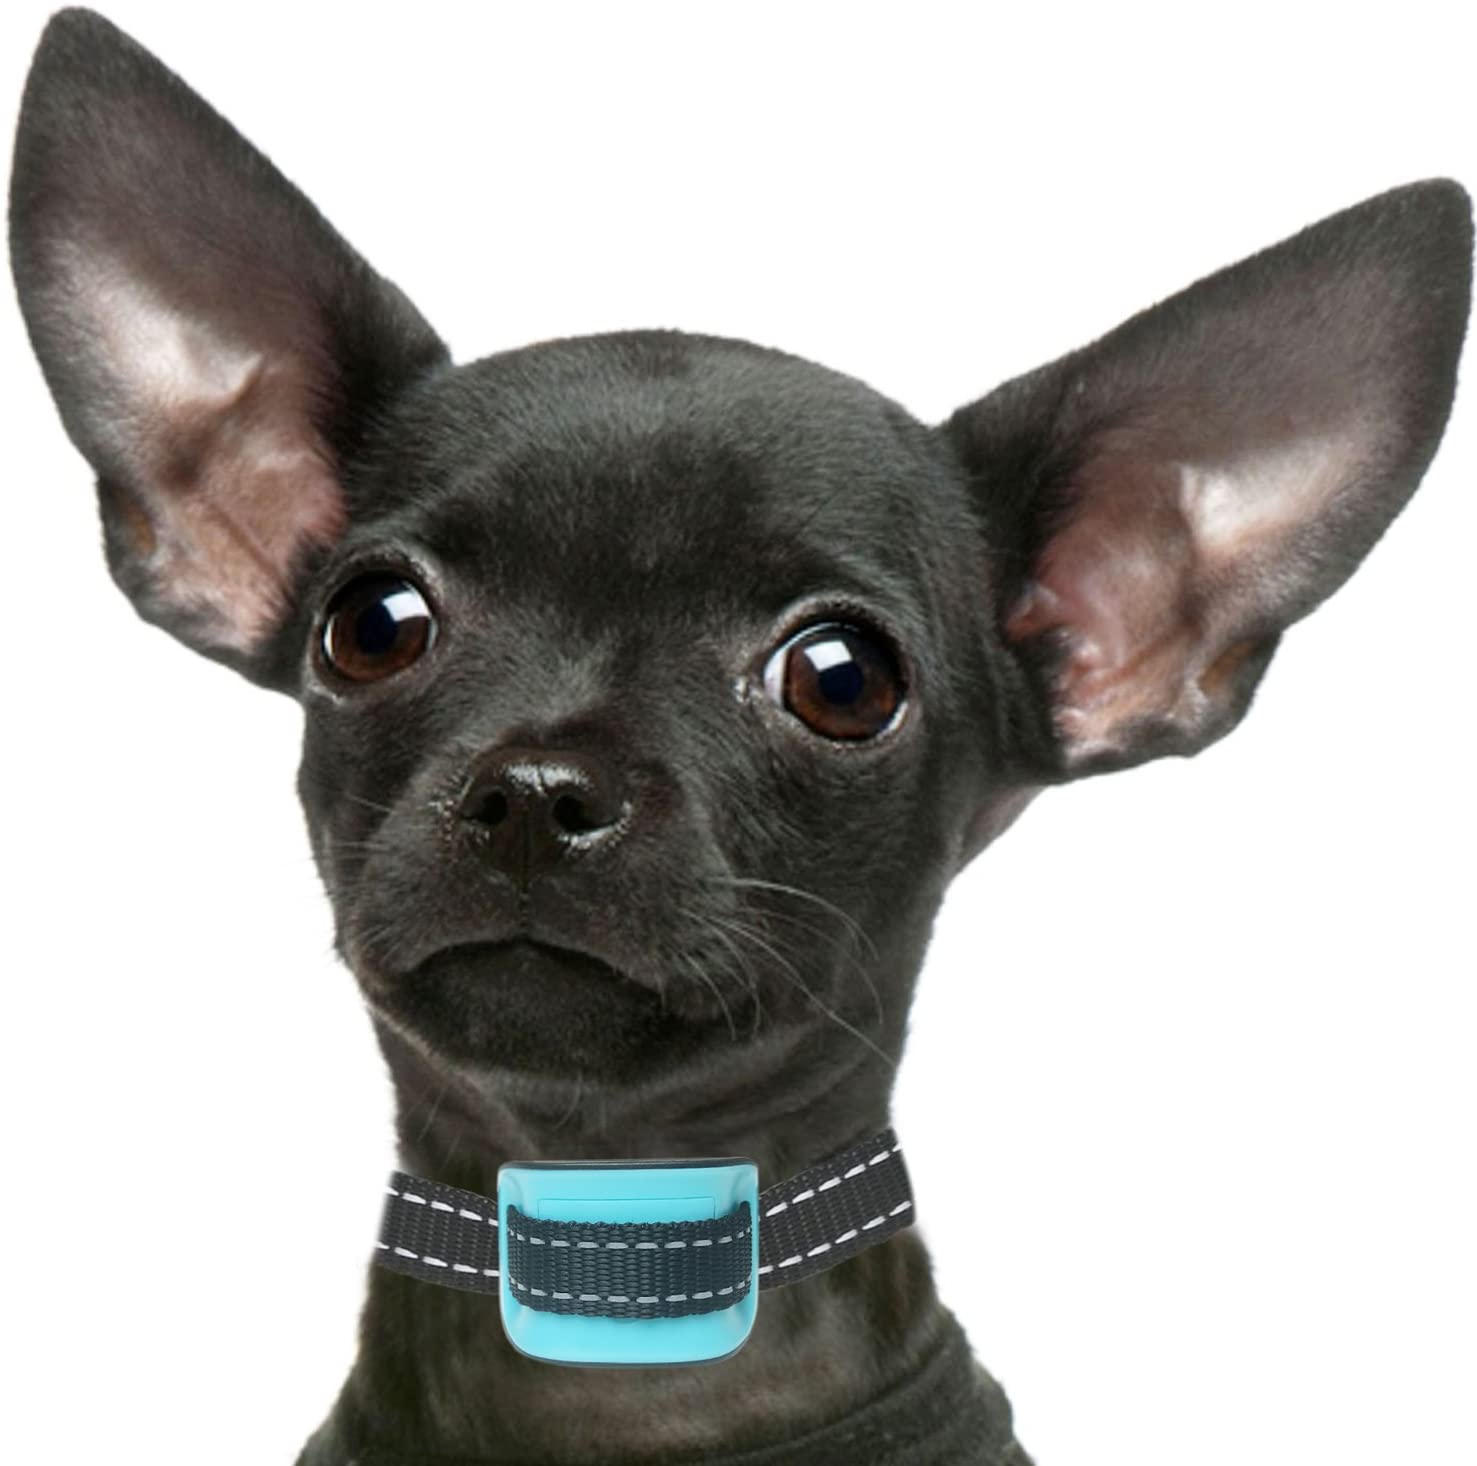  petsol inteligente avanzado antiladridos Collar Detener Barking perro, fiable paradas perros perros de forma segura y civilizada. 